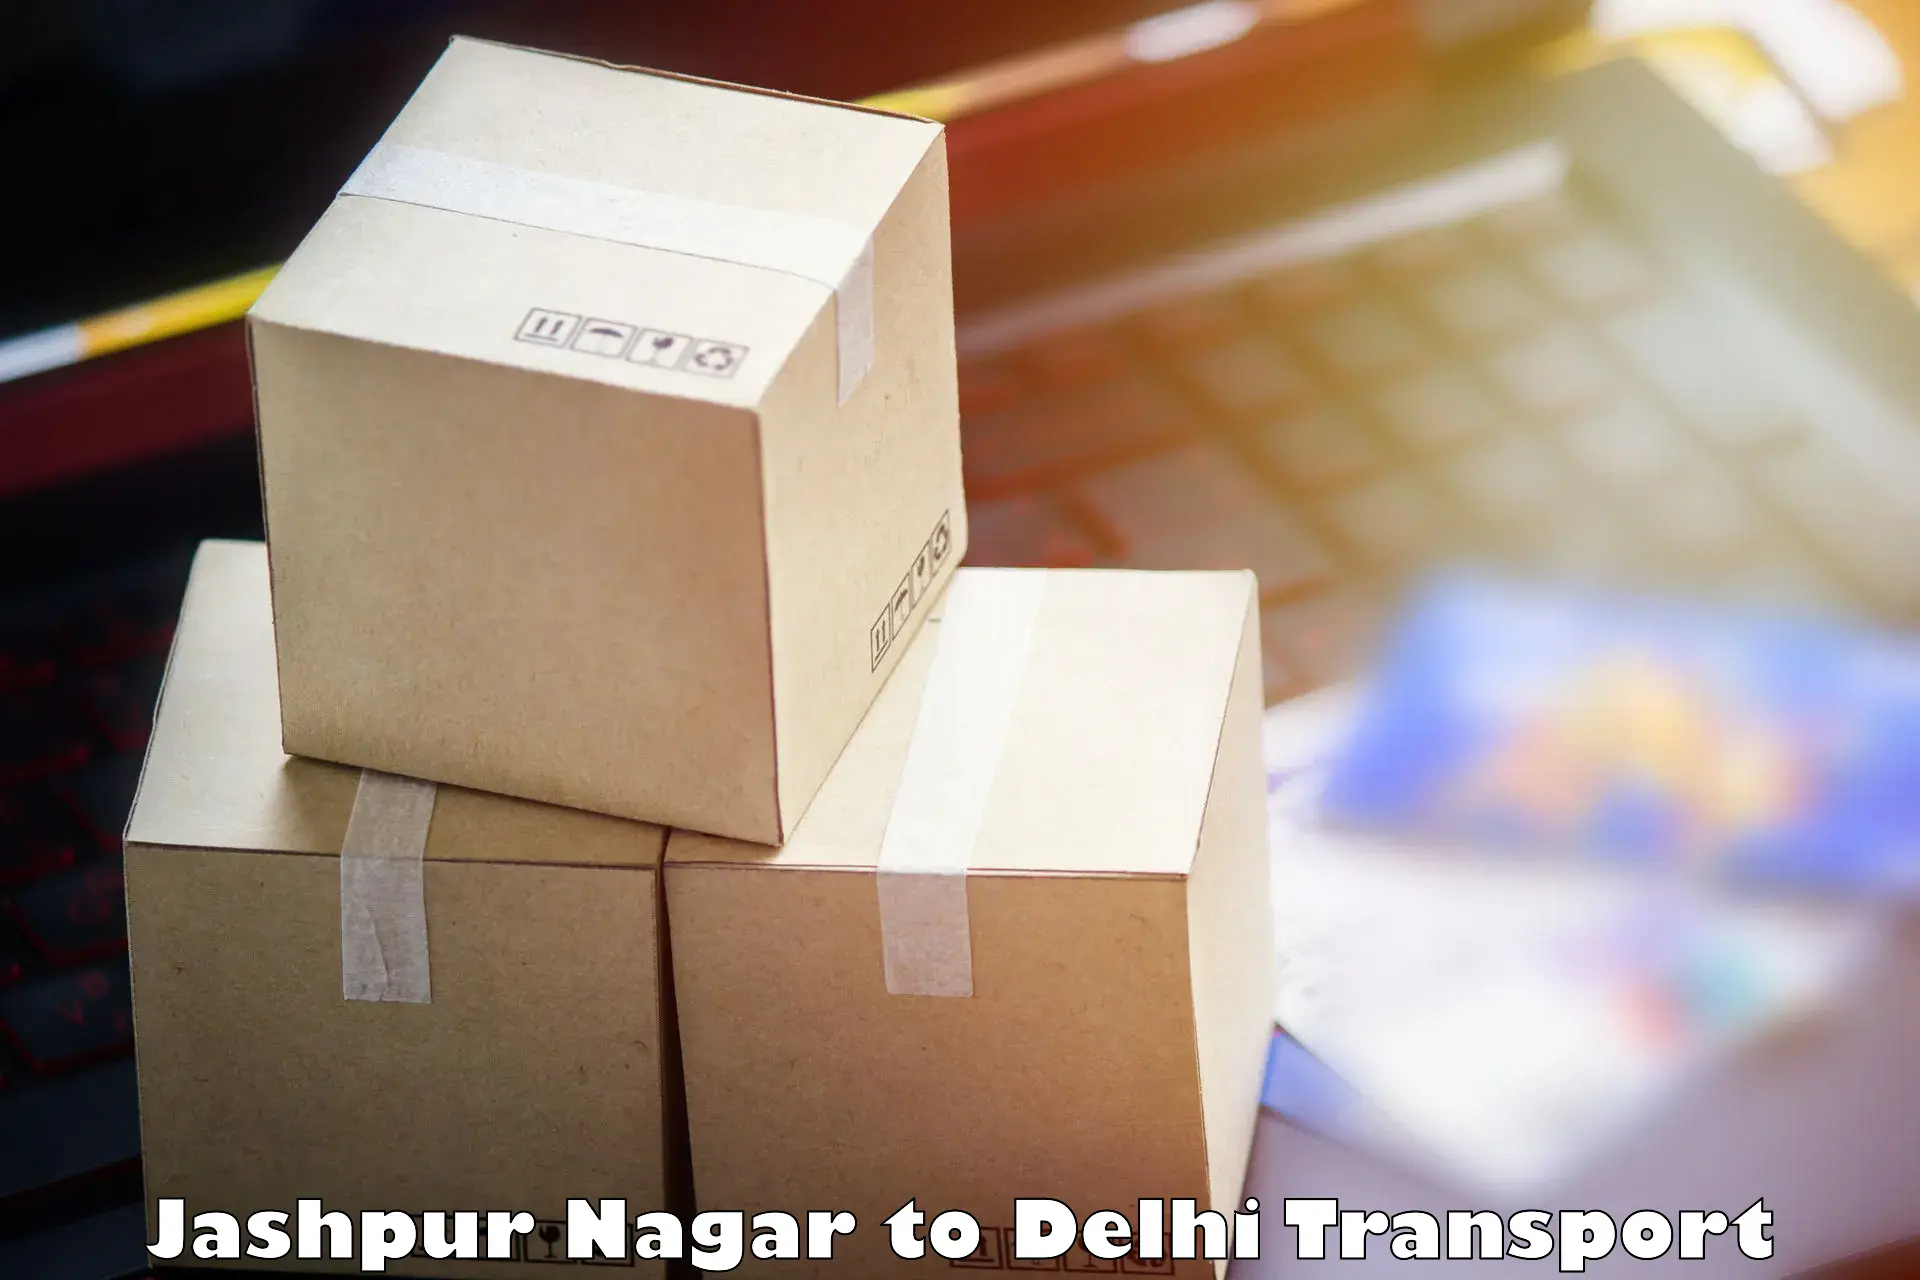 Parcel transport services Jashpur Nagar to Ramesh Nagar